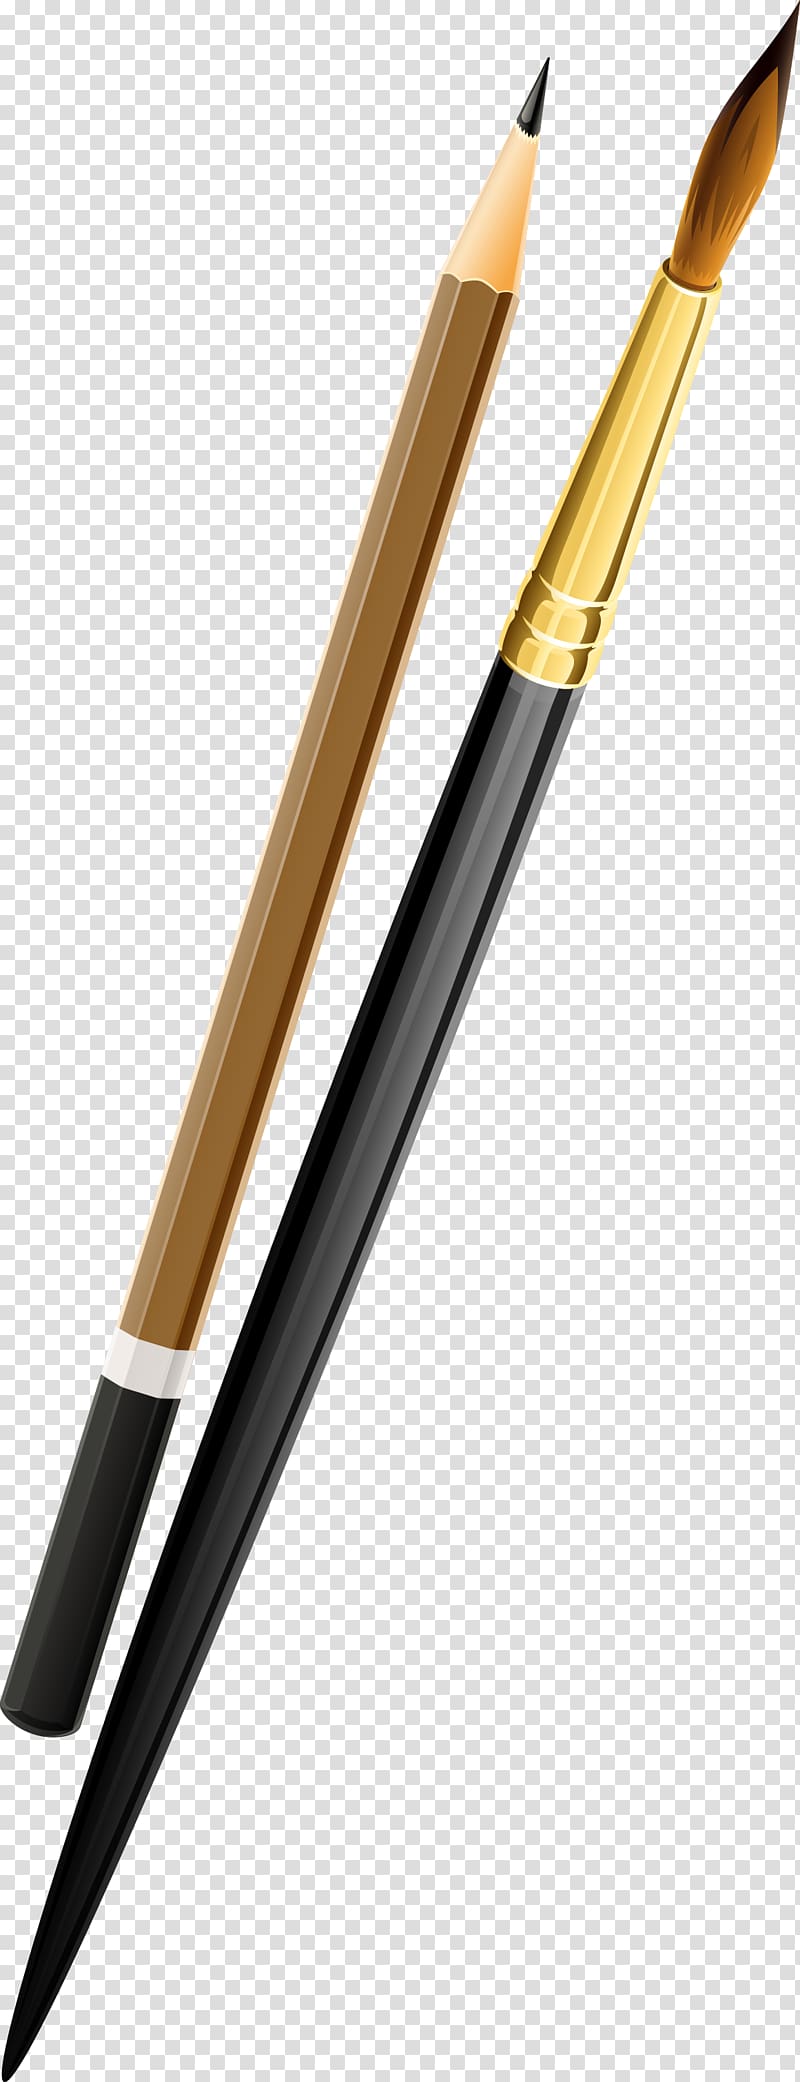 Paintbrush Palette Painter Pencil, pensil transparent background PNG clipart